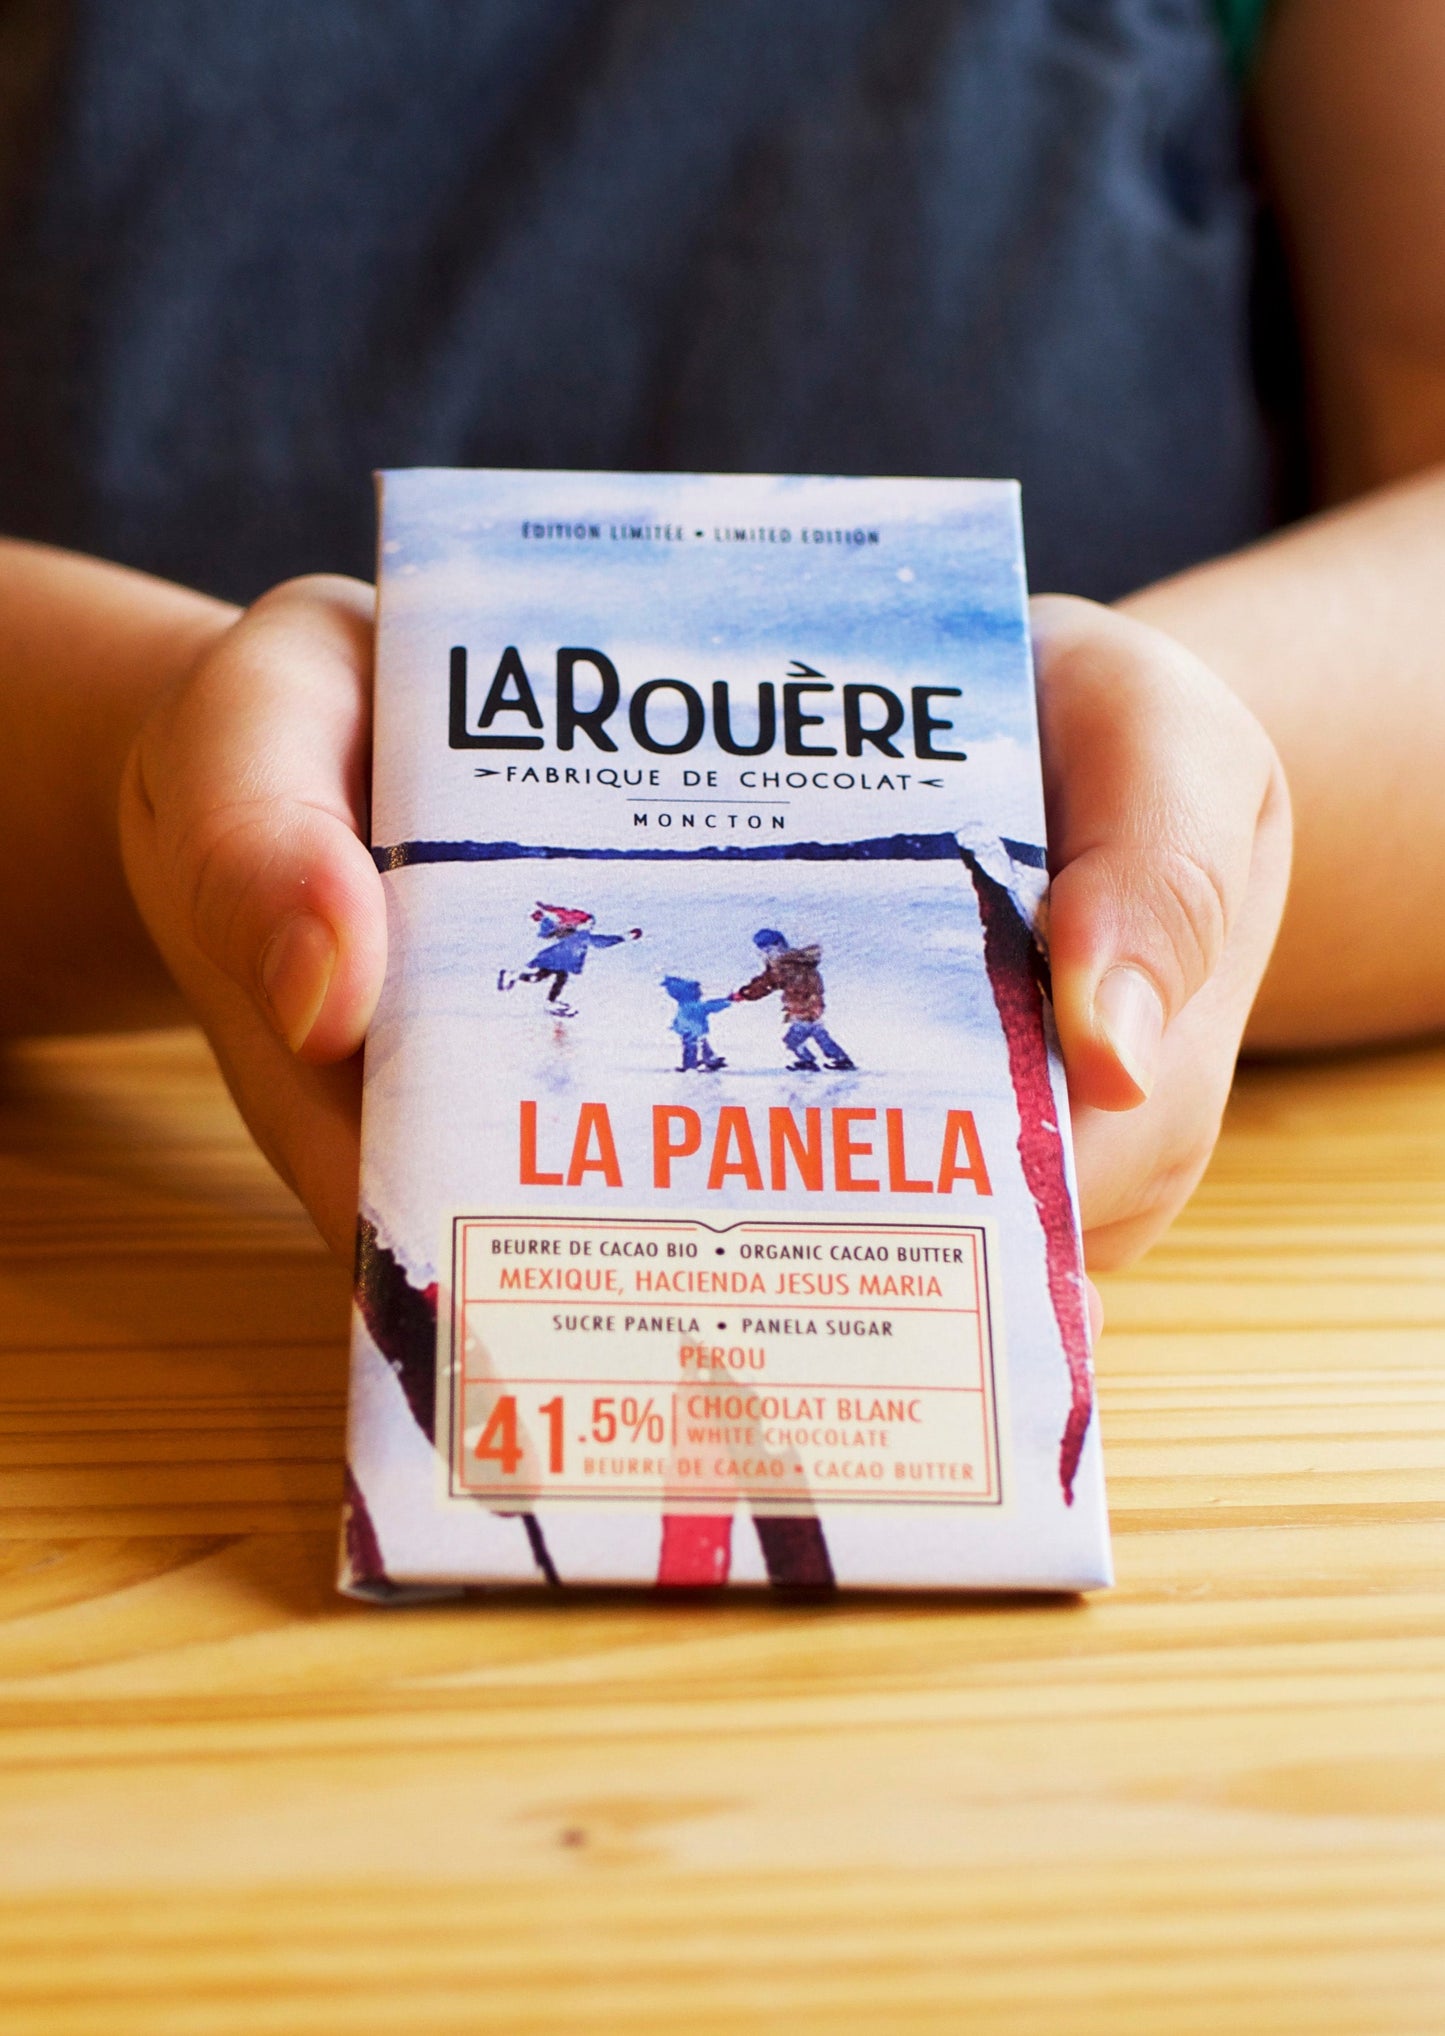 LaPanela 41.5% – Chocolat blanc / White Chocolate